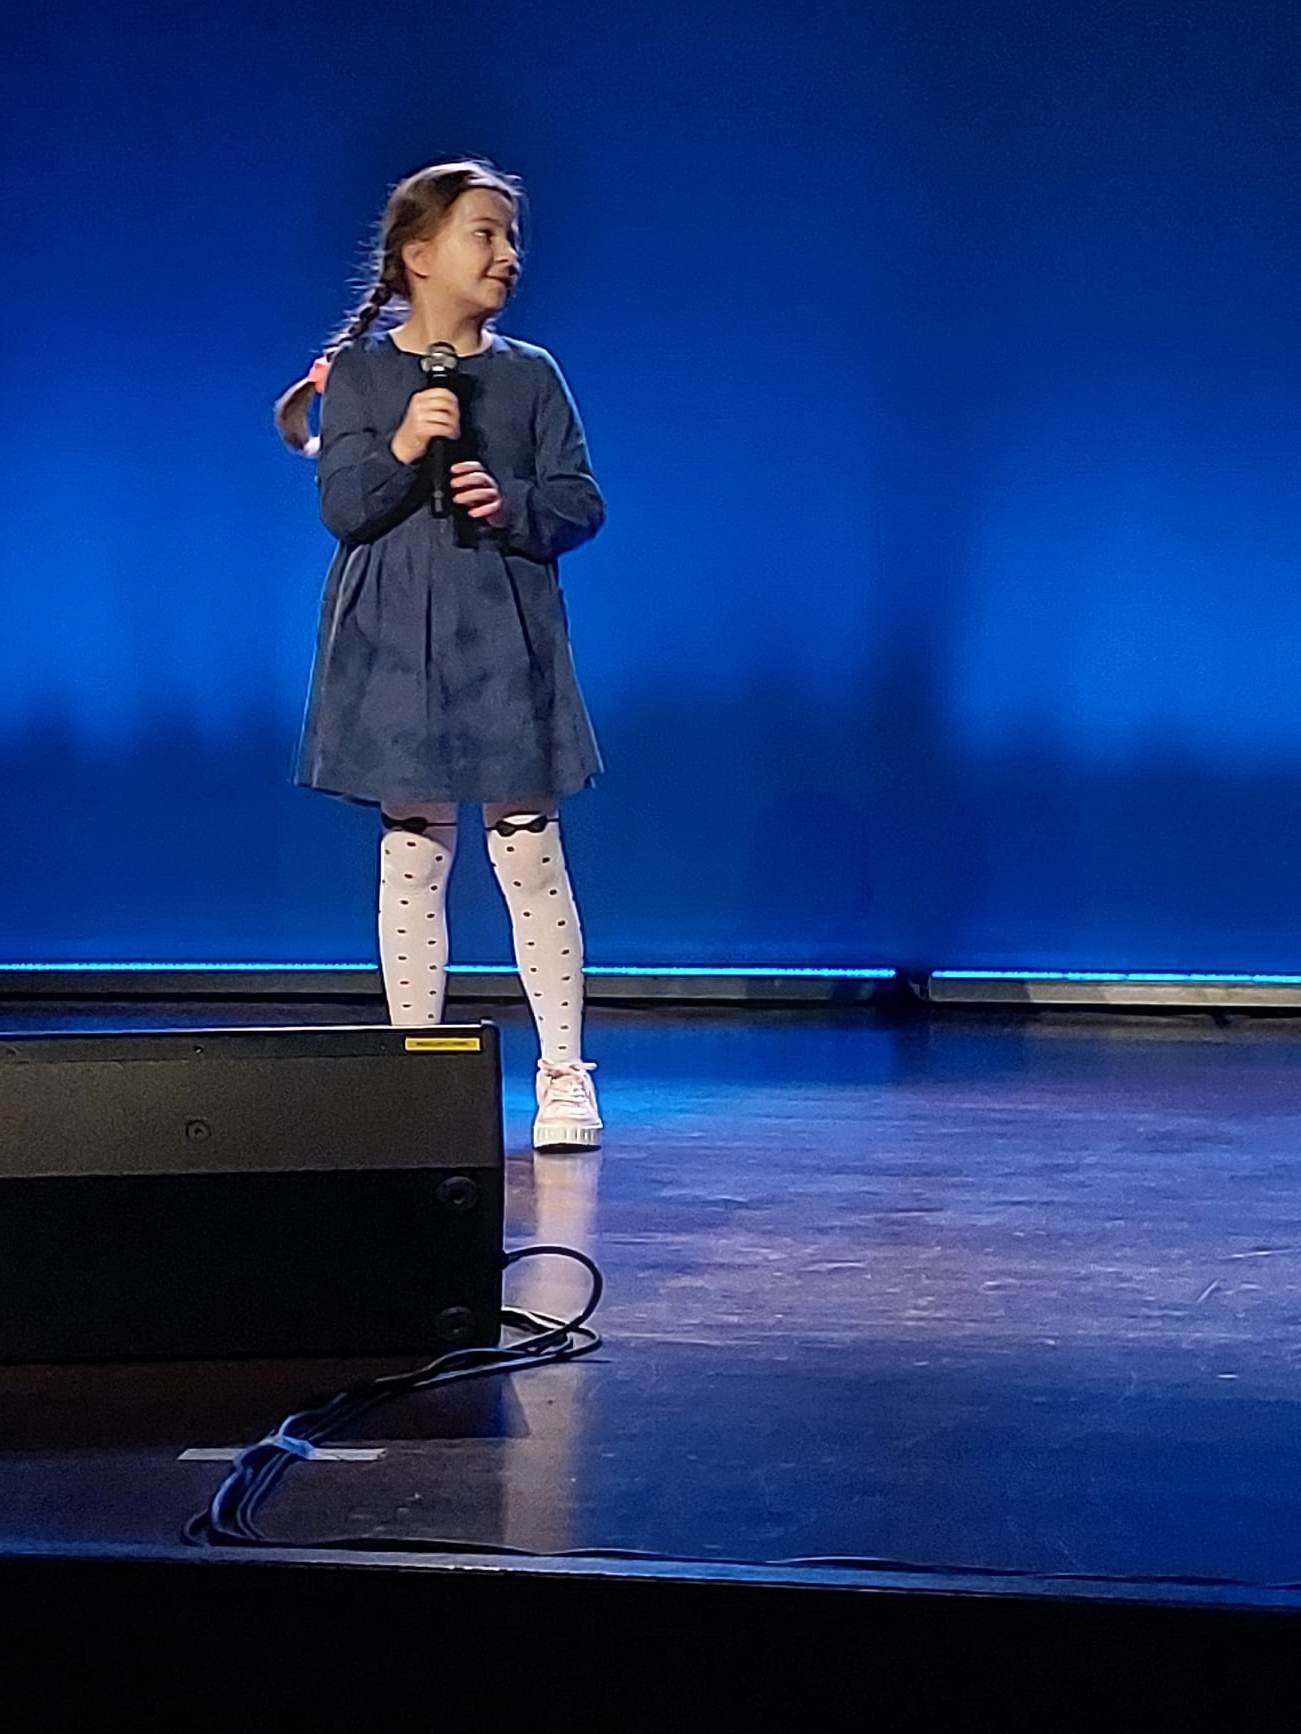 Dziewczynka z mikrofonem w ręku na scenie śpiewa piosenkę